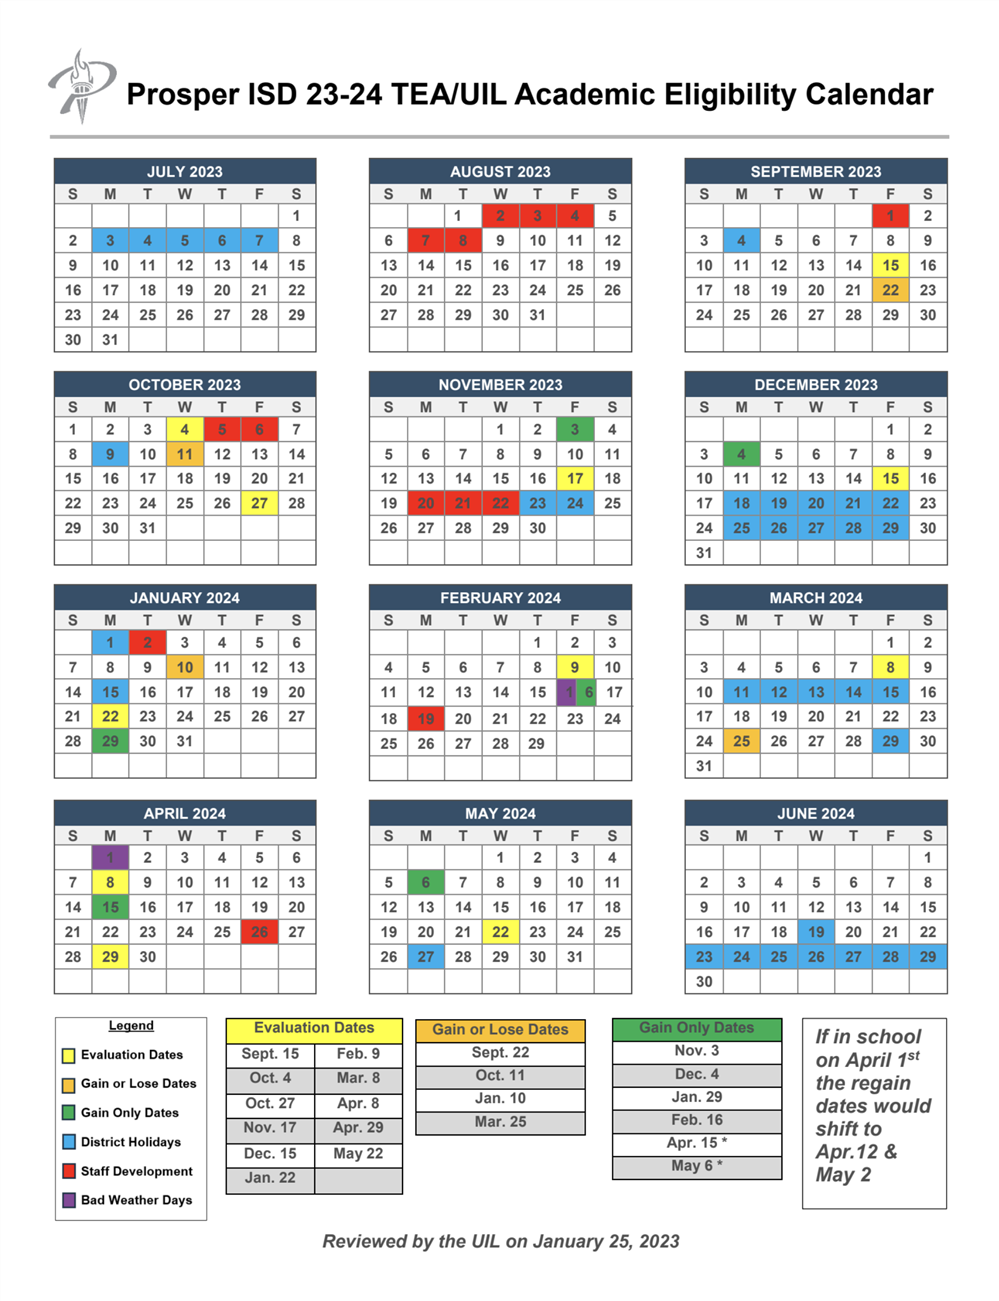 TEA/UIL Academic Eligibility Calendar